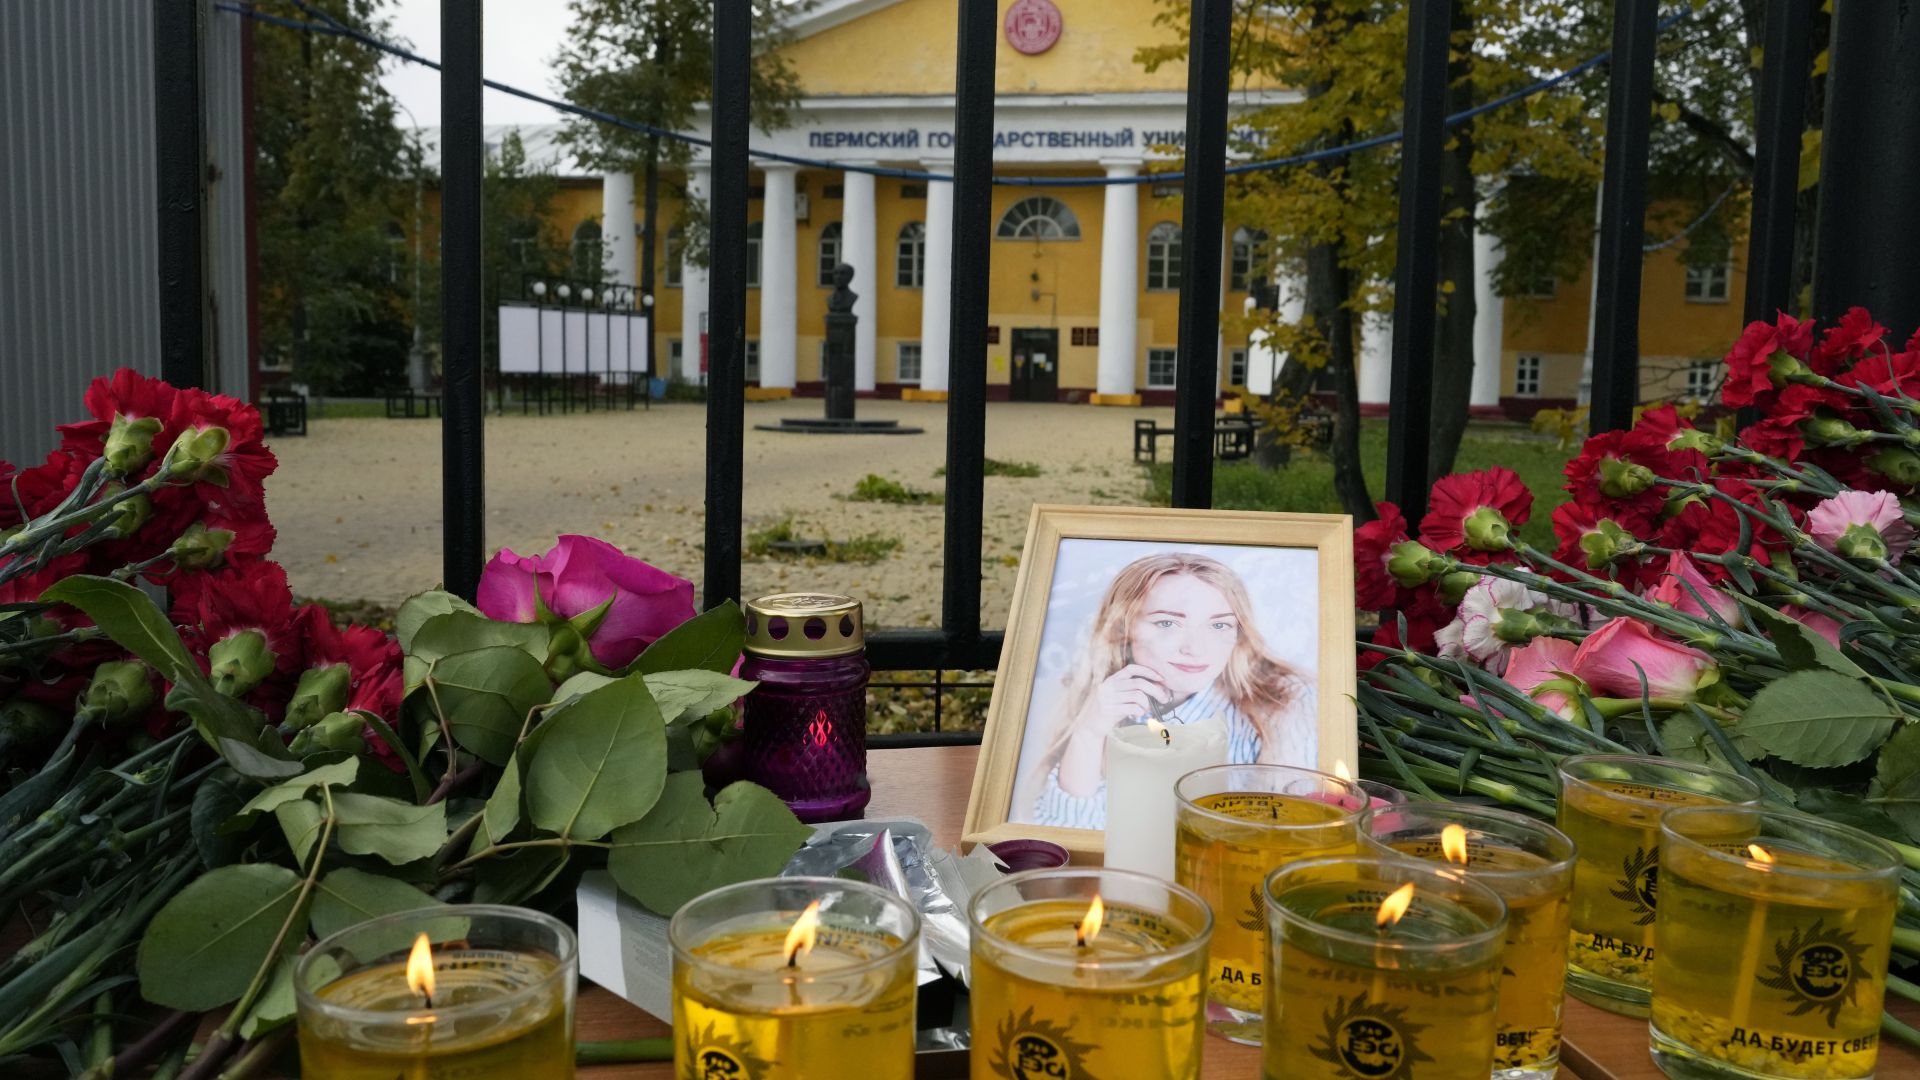 Скръб в Перм: Опечалени поставиха цветя в памет на убитите в руския университет (снимки)